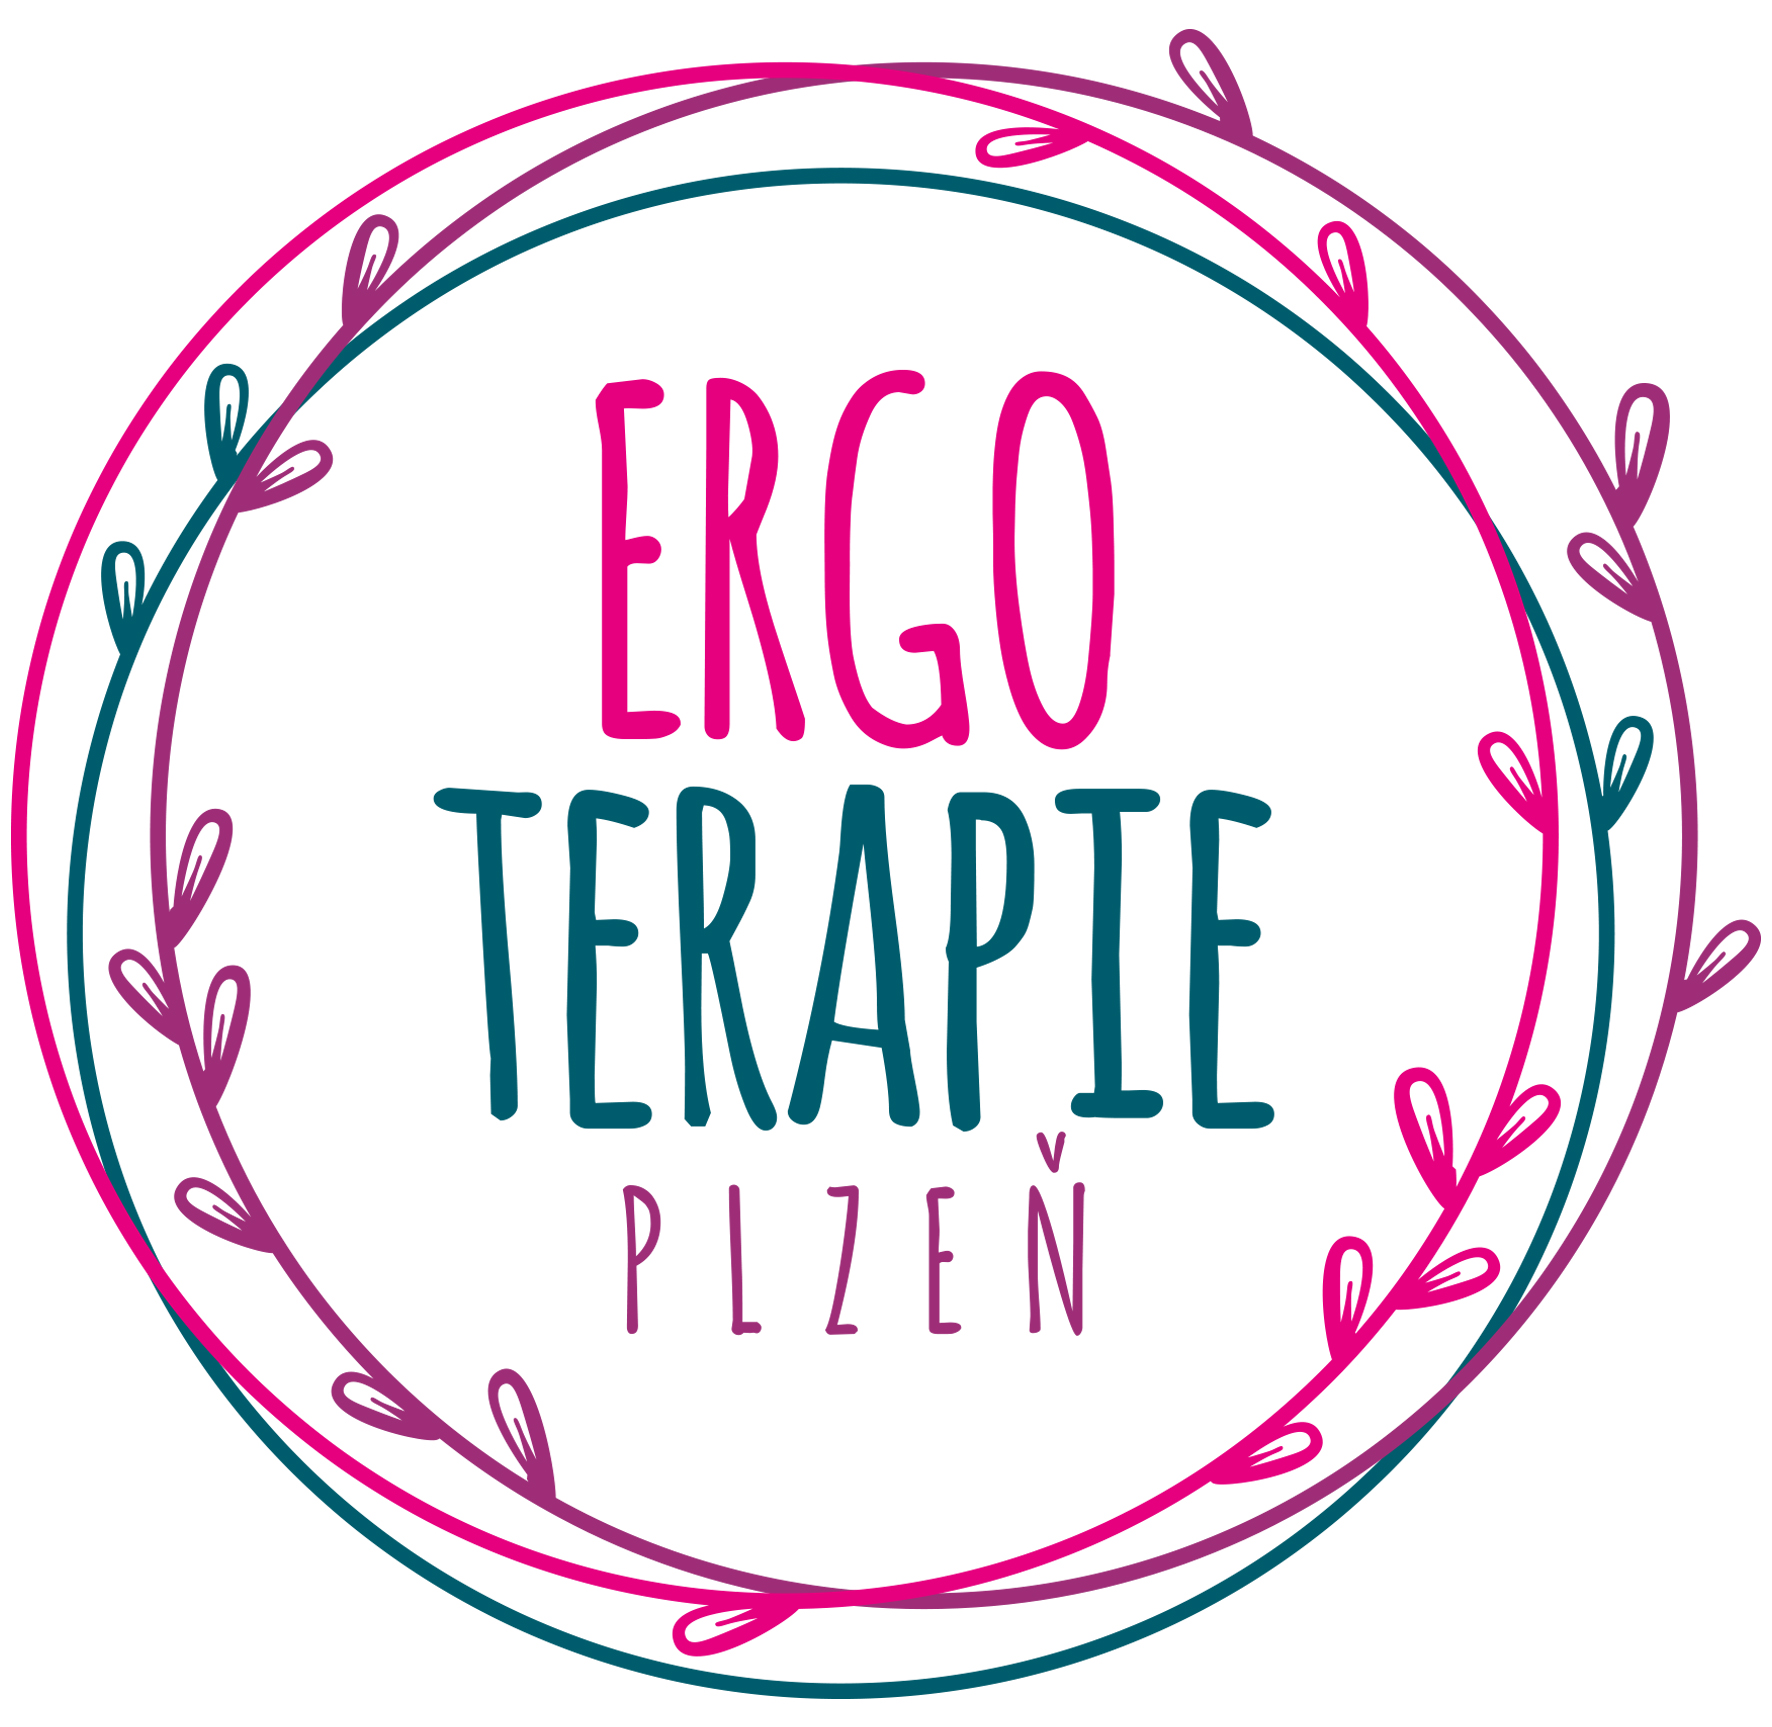 www.ergoterapieplzen.cz